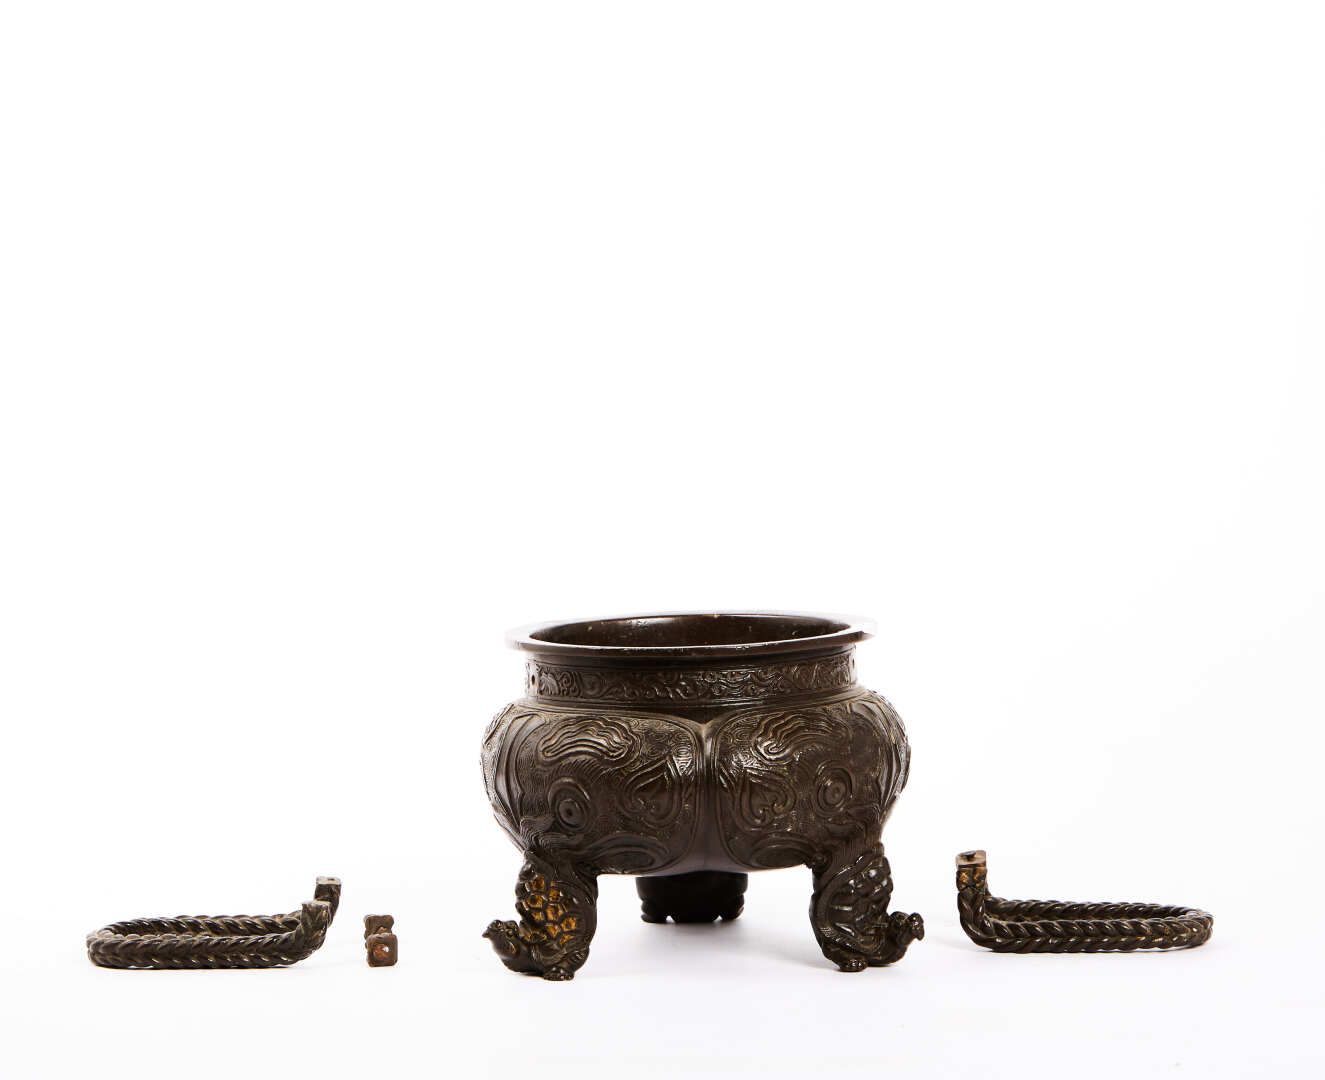 Null 饰有福狗和龙的黑色铜制三足鼎炉

印度支那，19世纪末

高度：14厘米